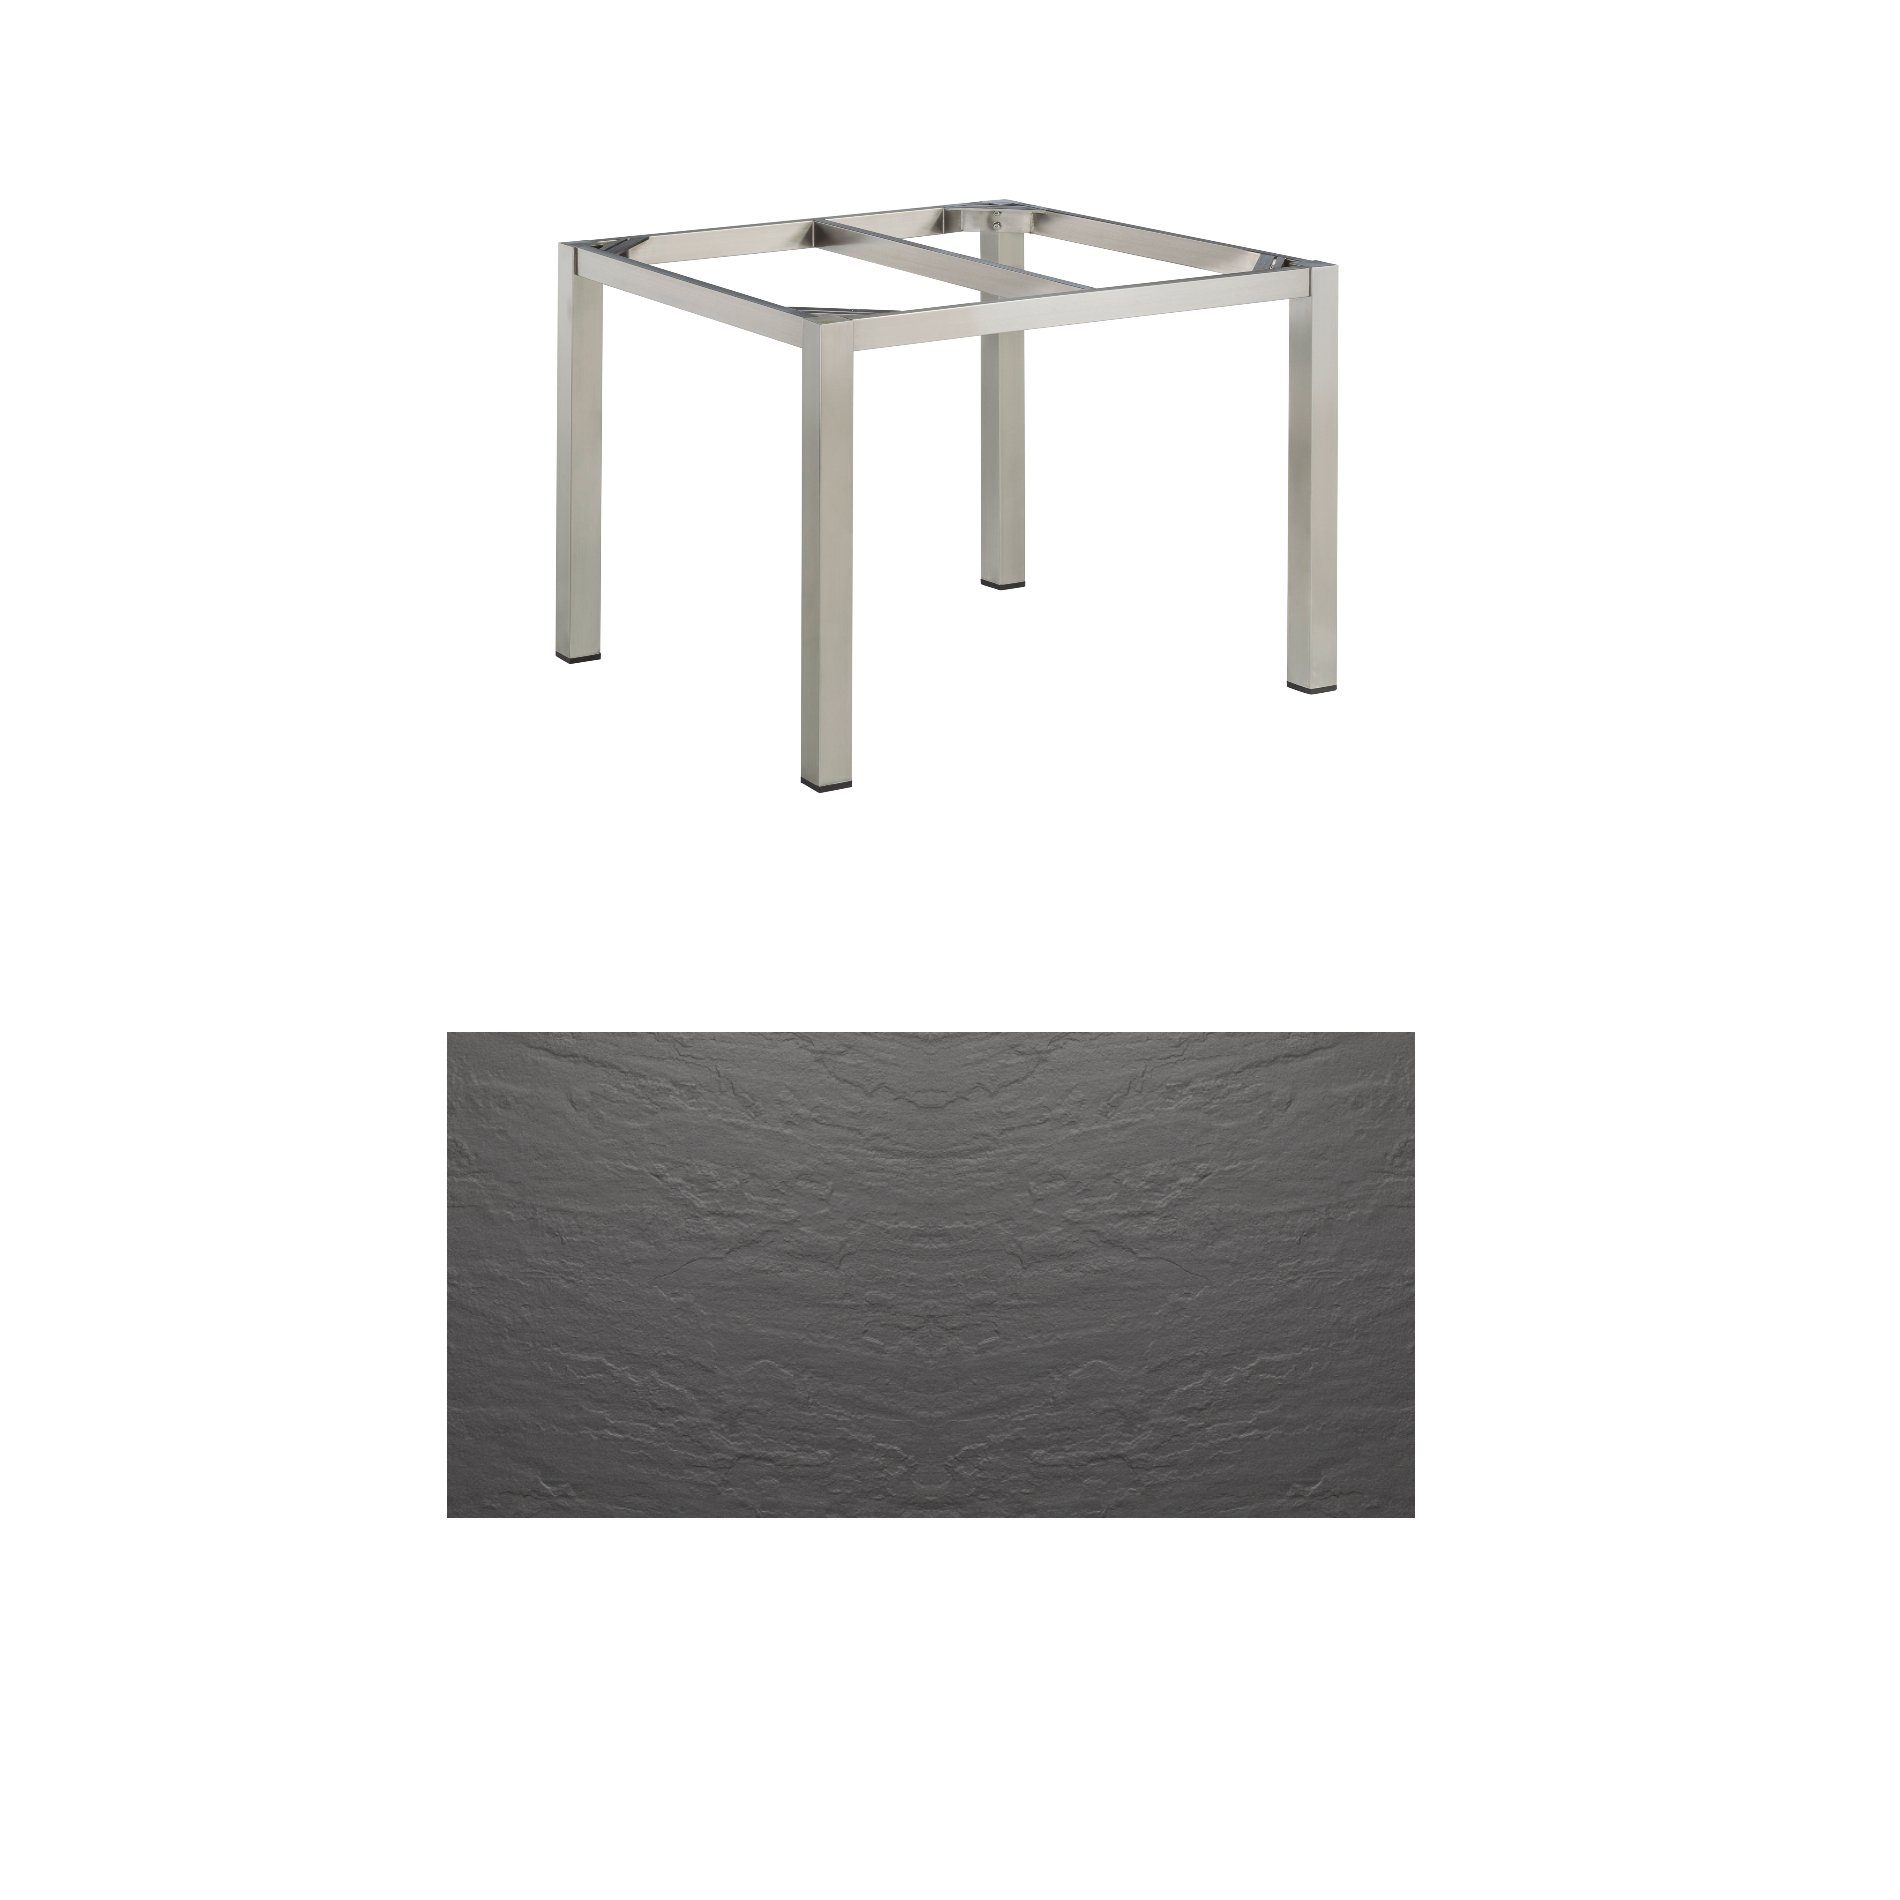 Kettler “Cubic“ Tischsystem Gartentisch, Gestell Edelstahl gebürstet, Tischplatte Kettalux-Plus anthrazit (Schieferoptik), 95x95 cm